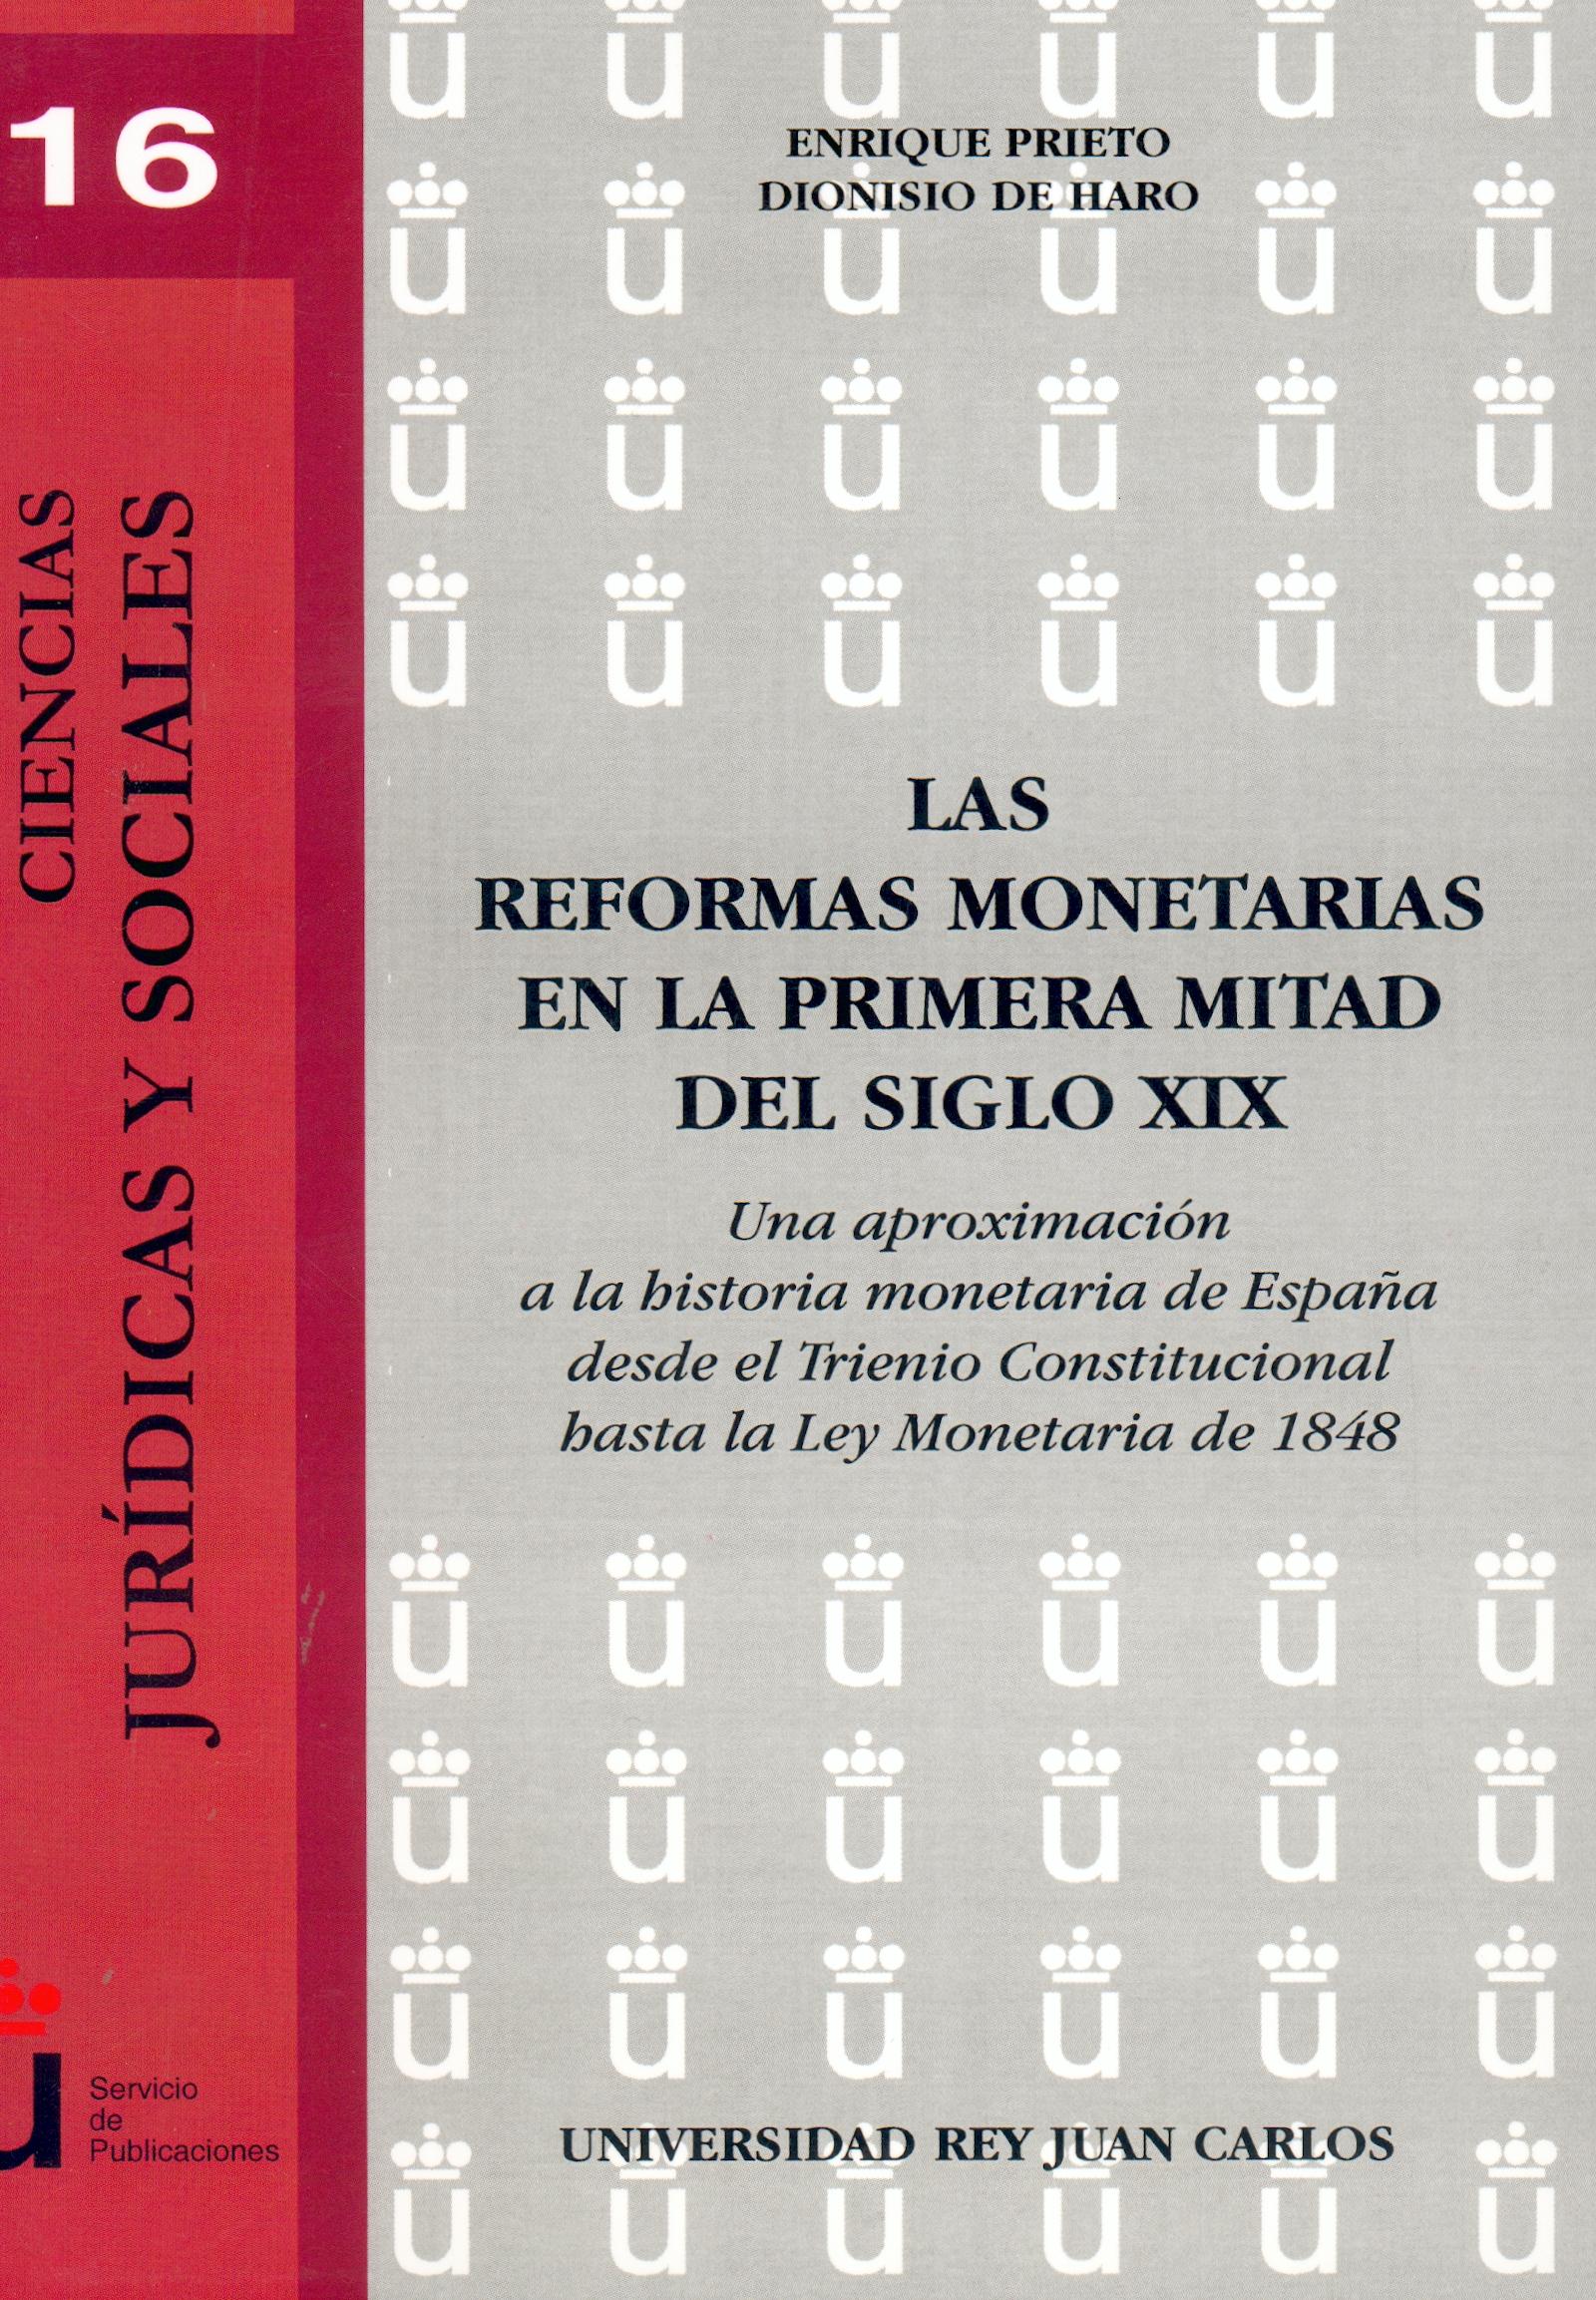 Las Reformas Monetarias en la Primera Mitad del Siglo Xix